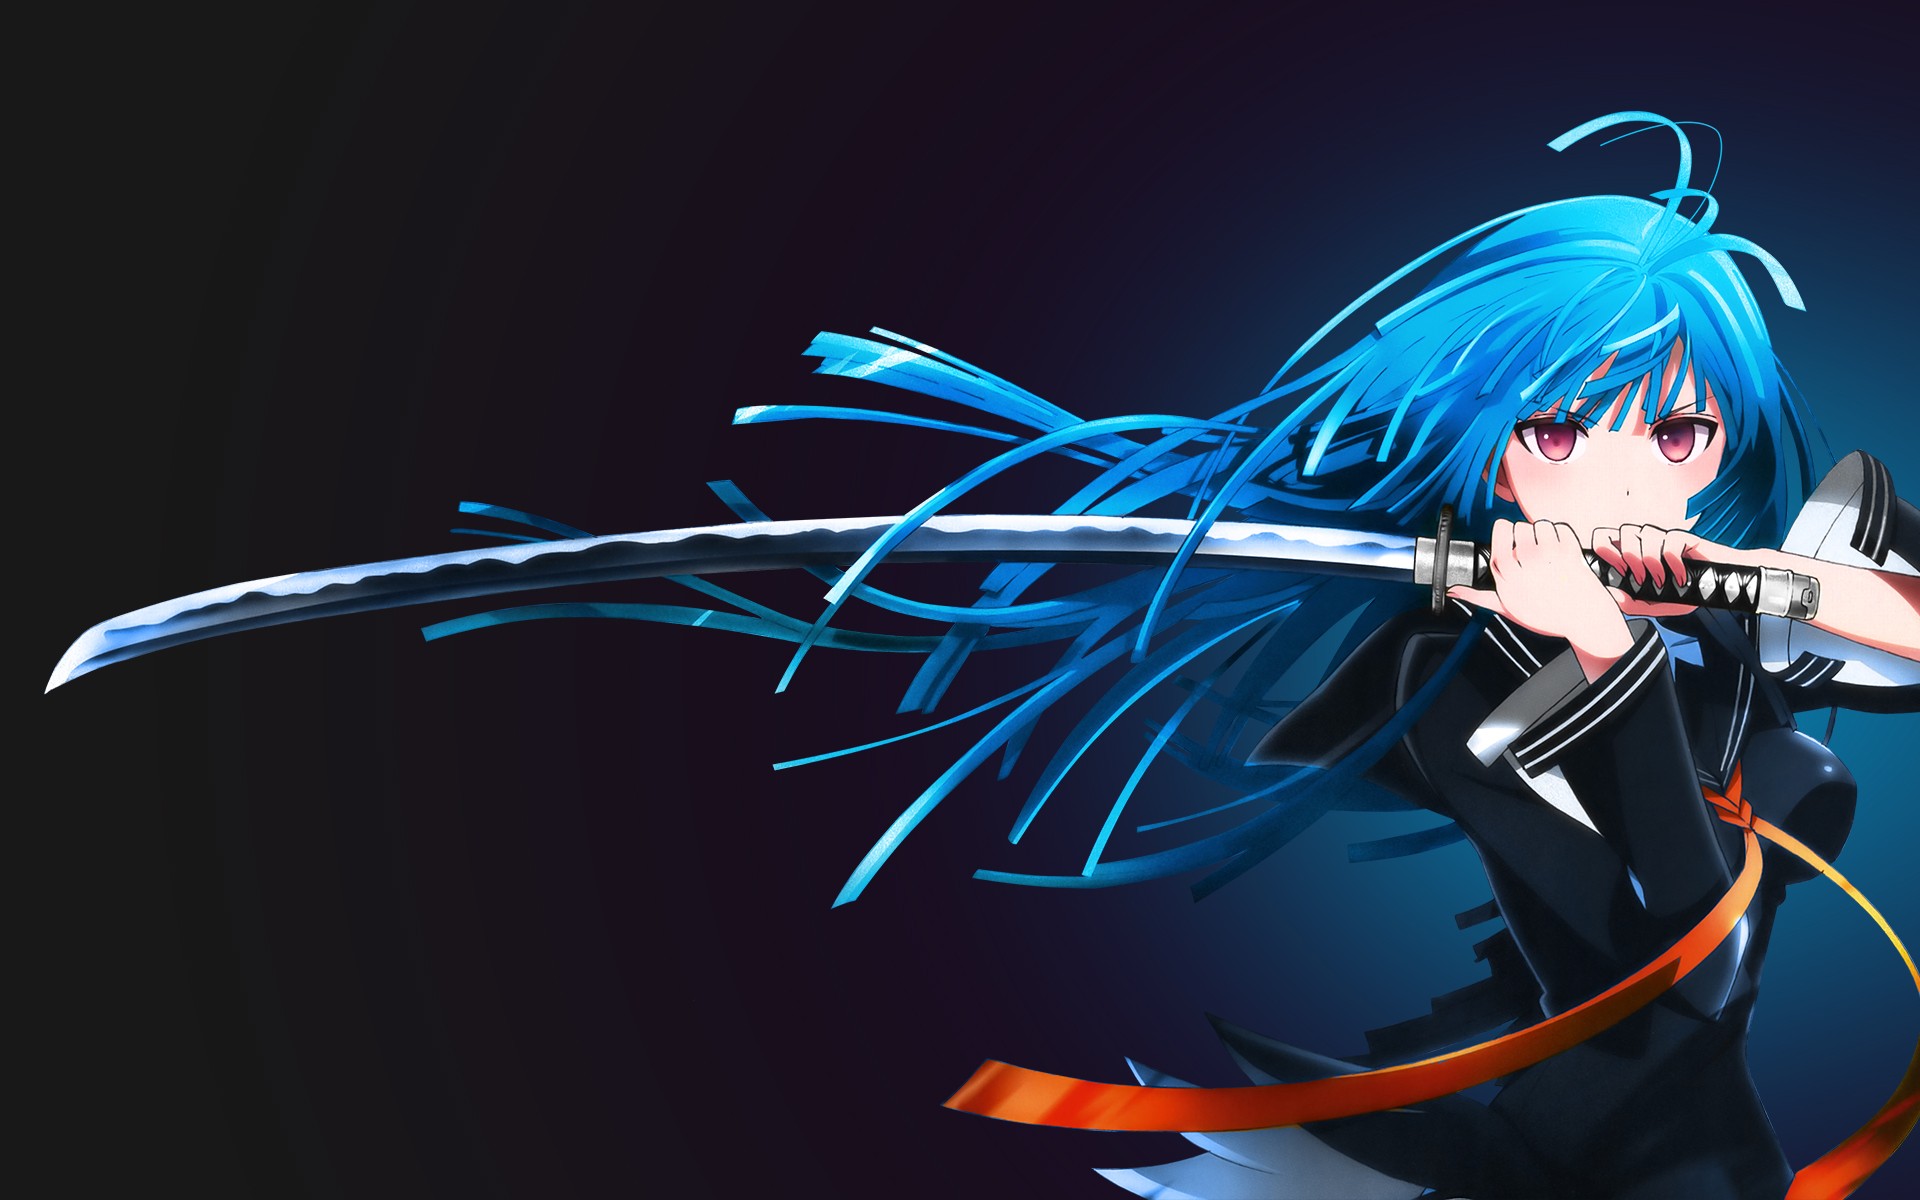 Hình ảnh anime đẹp về mái tóc dài màu xanh lam